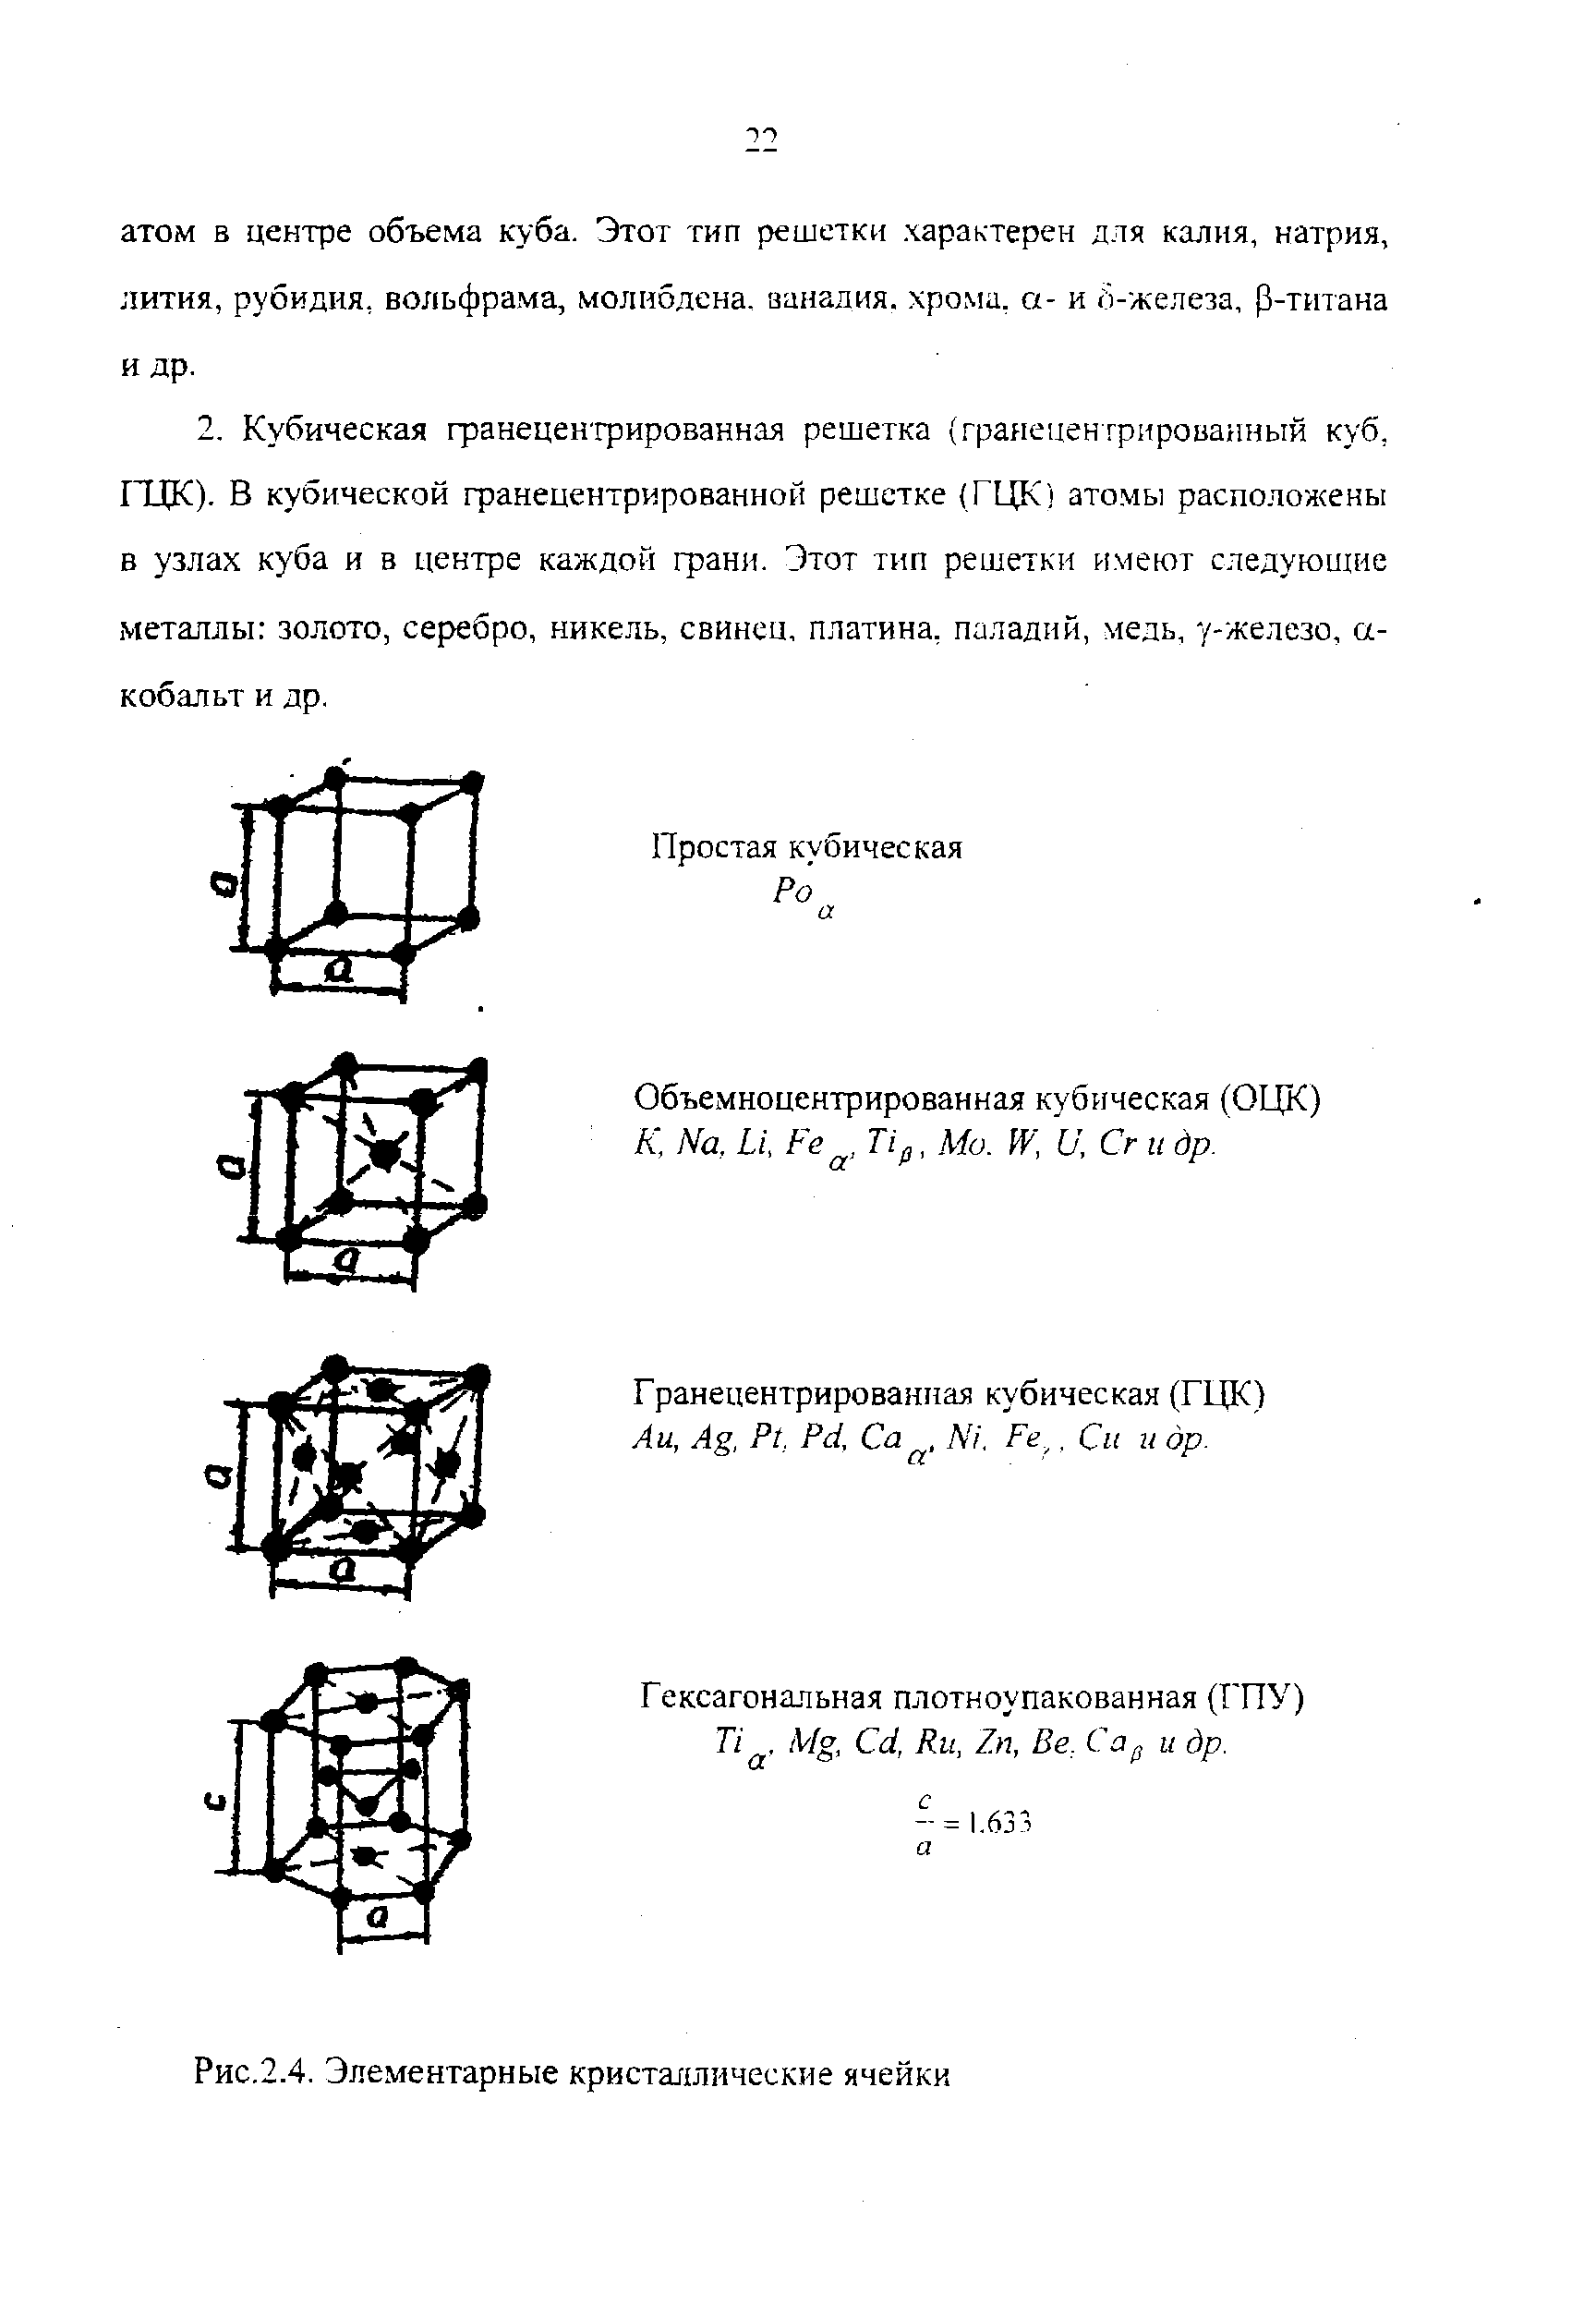 Объемноцентрированная кубическая (ОЦК) К, Ма, Ы, Fe Tip, Мо. W, U, Сг и др.
